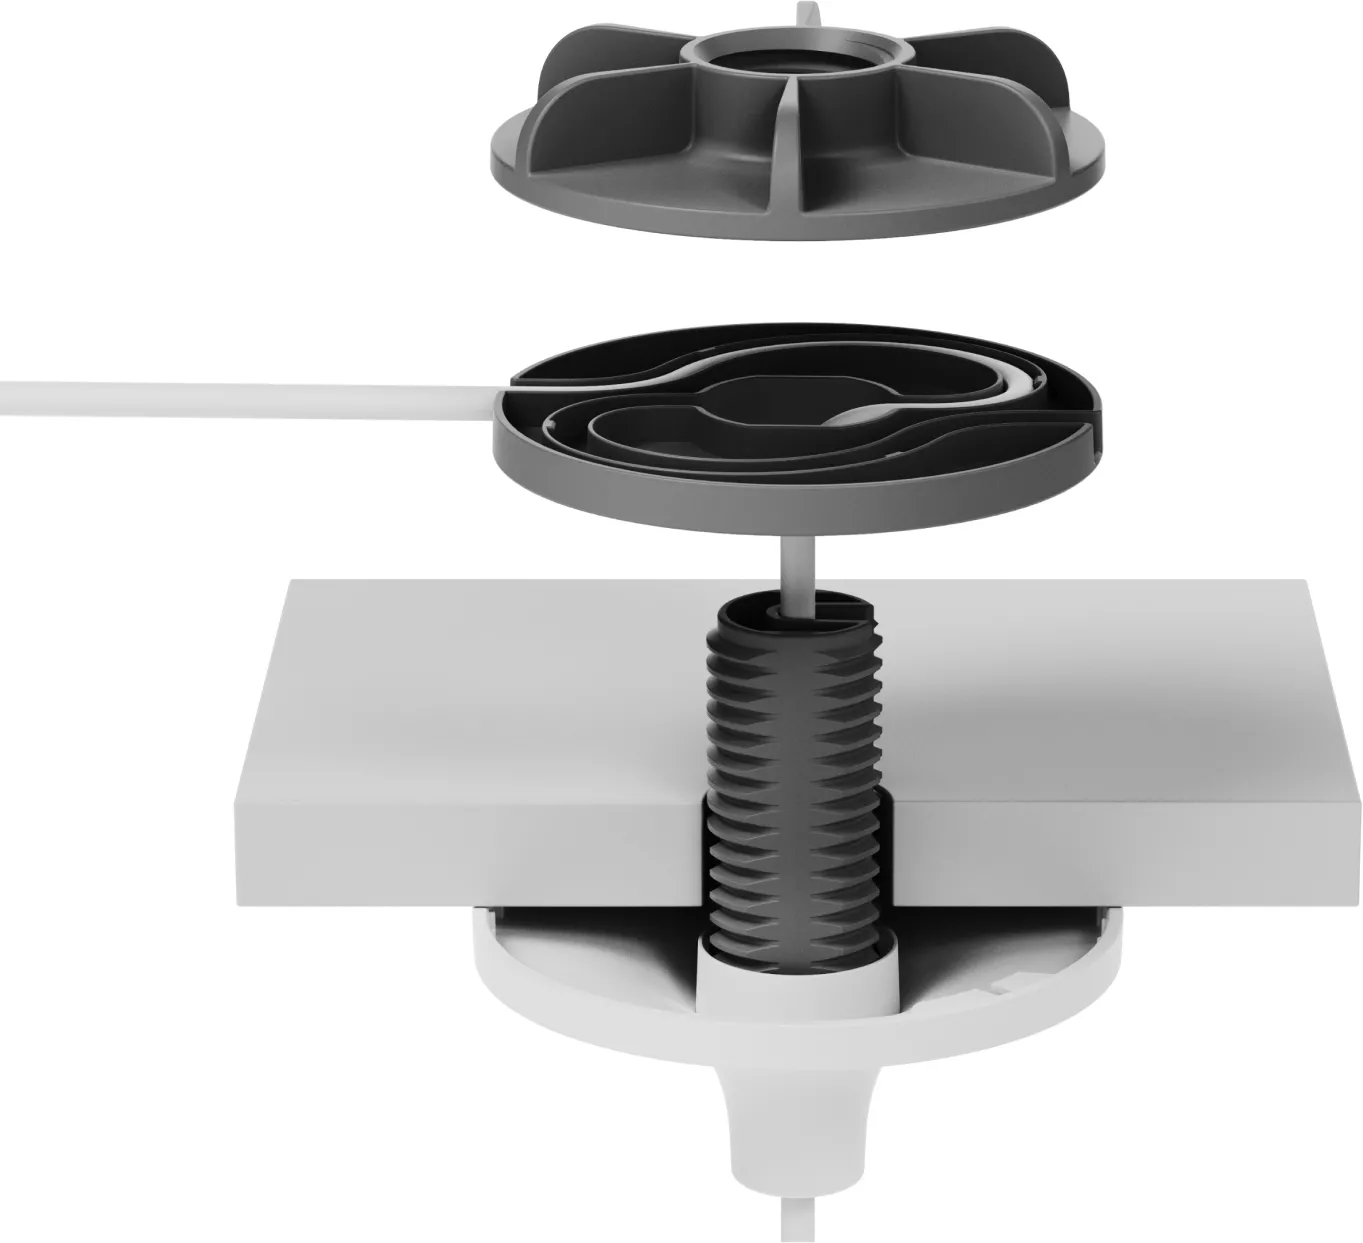 Vente LOGITECH Mounting kit ceiling mount mic holder for Logitech au meilleur prix - visuel 2